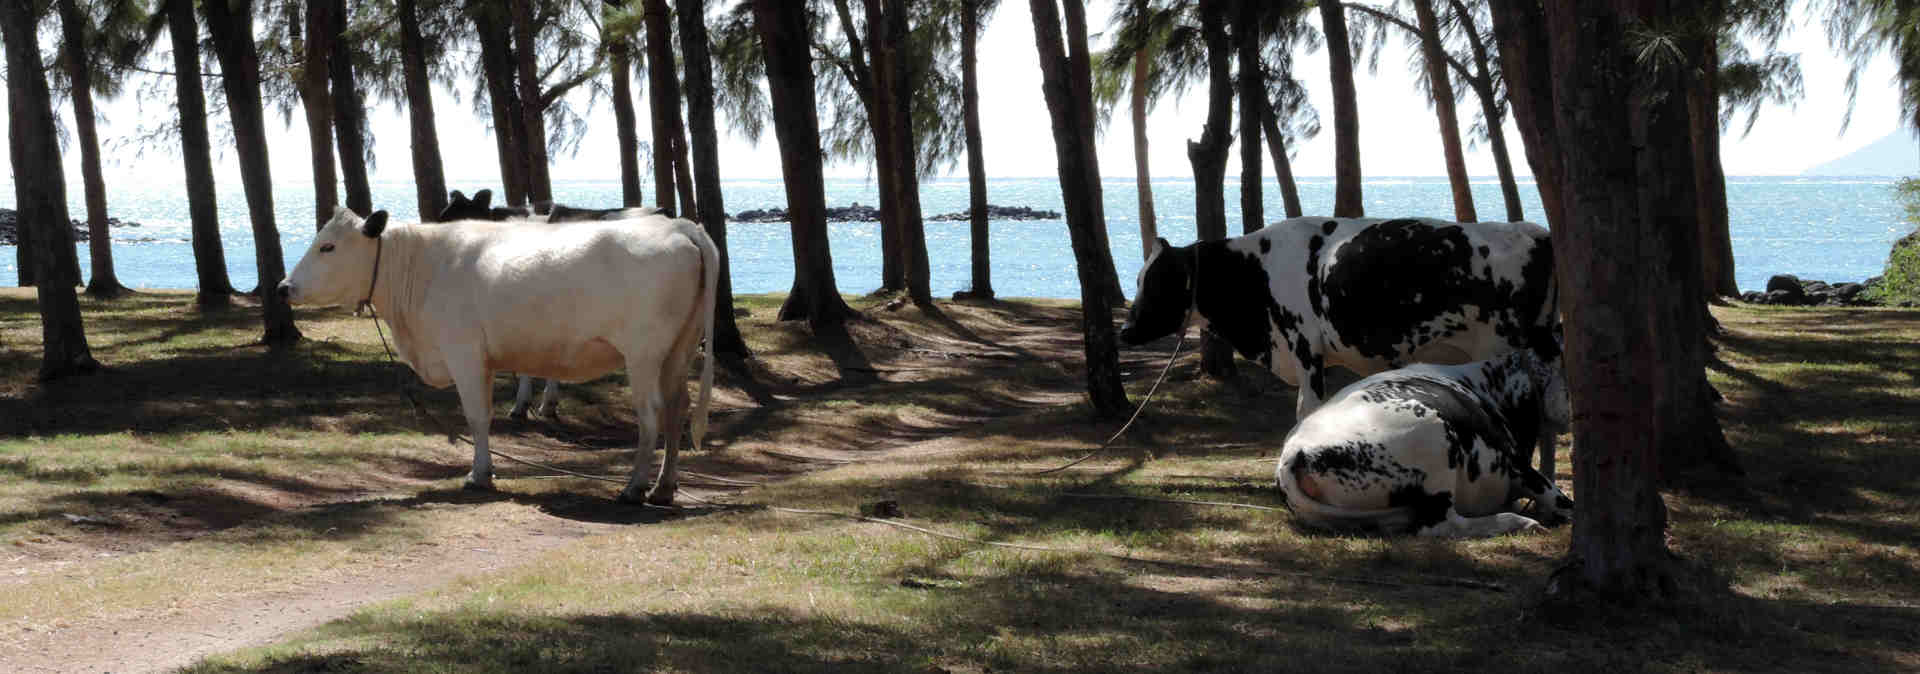 Koeien op het strand in Mauritius